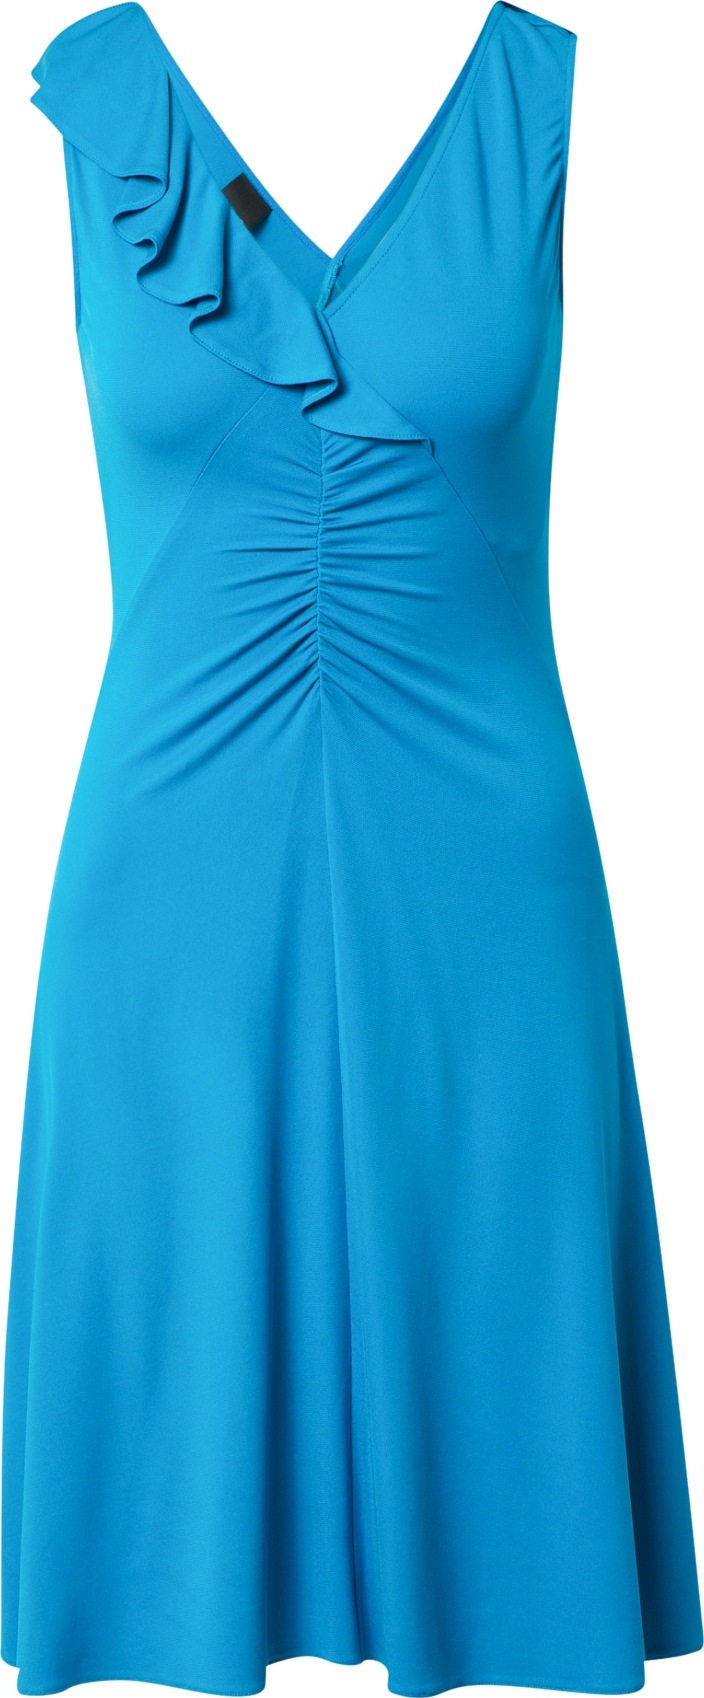 PINKO Letní šaty 'AUSTRALIANO' nebeská modř